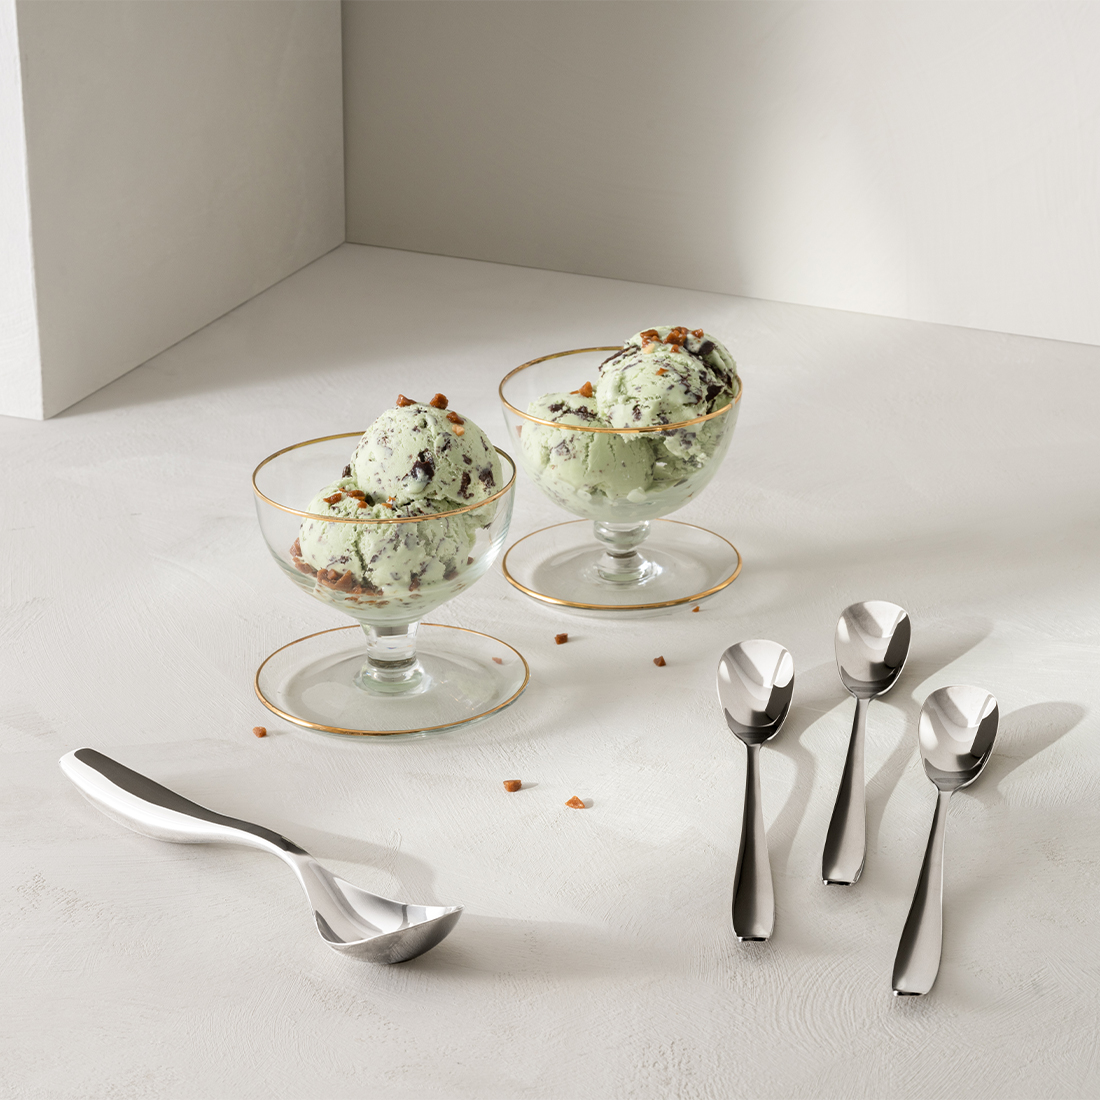 Iittala - Collective Tools Salad set 2 pieces